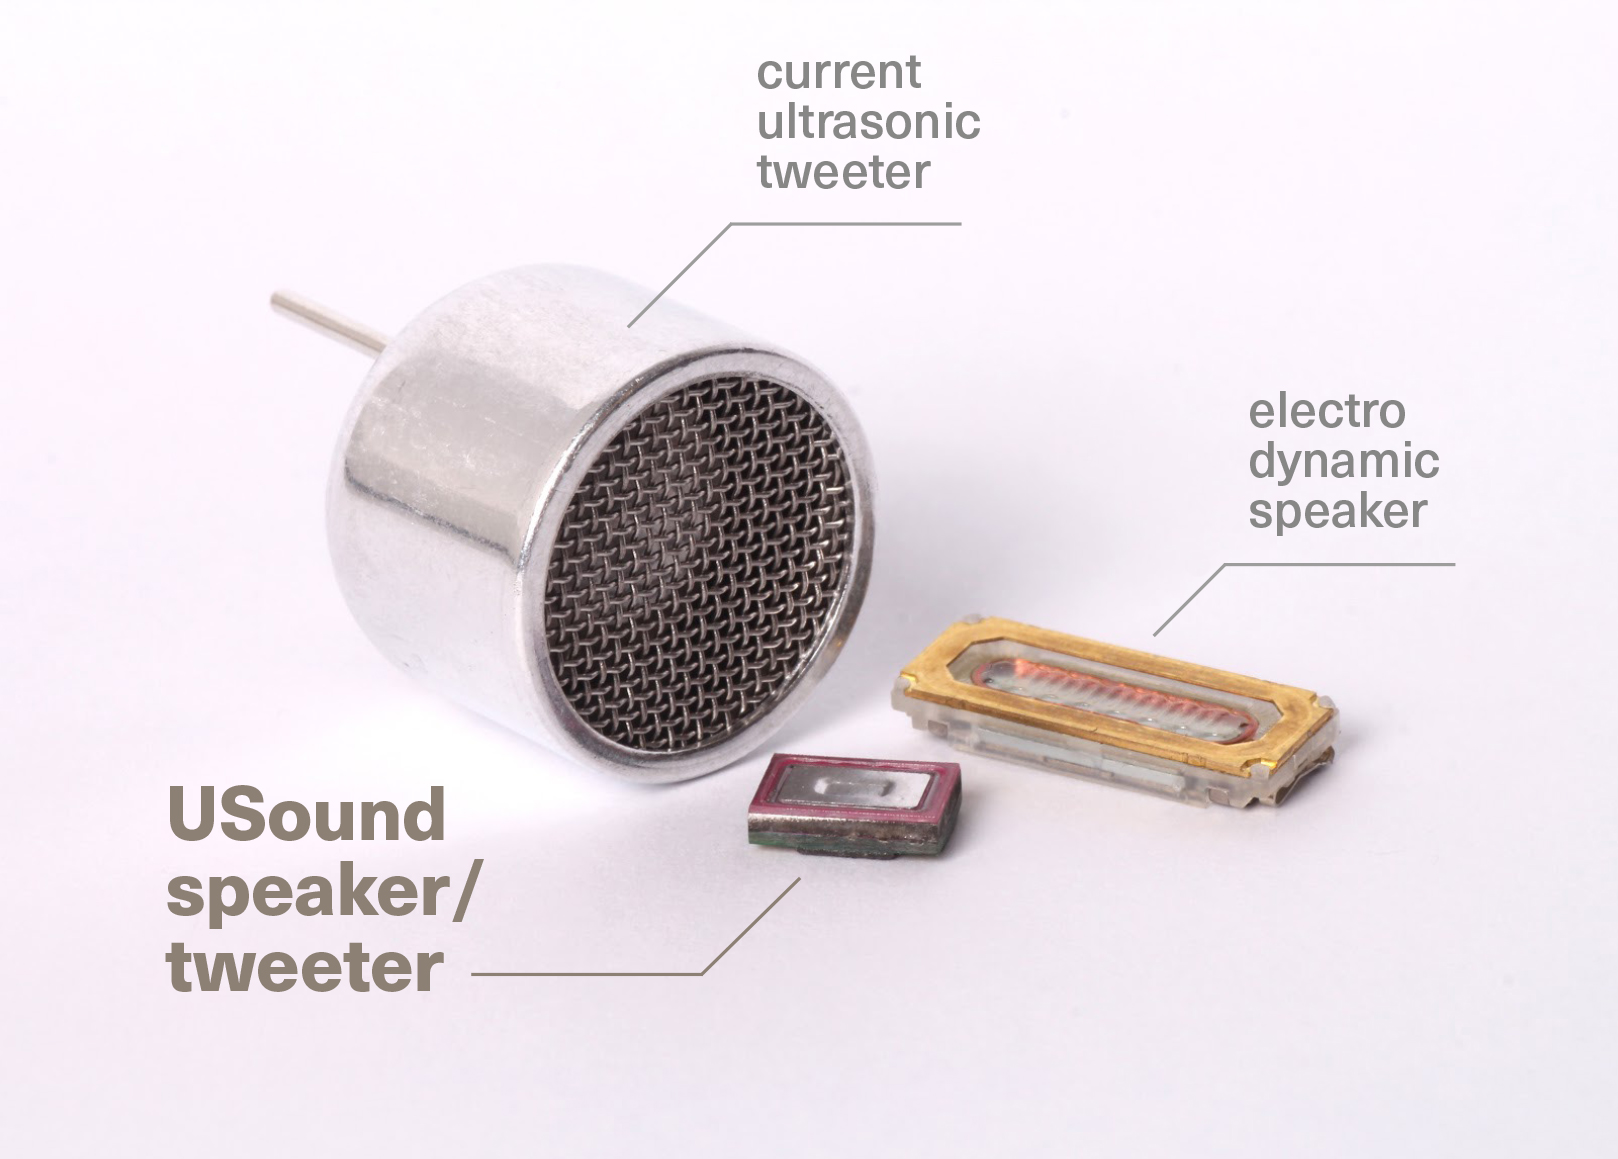 (c) USound - Kleiner, energieffezienter und mit besserer Tonqualität - wird sich der Lautsprecher auch auf dem Weltmarkt durchsetzen?